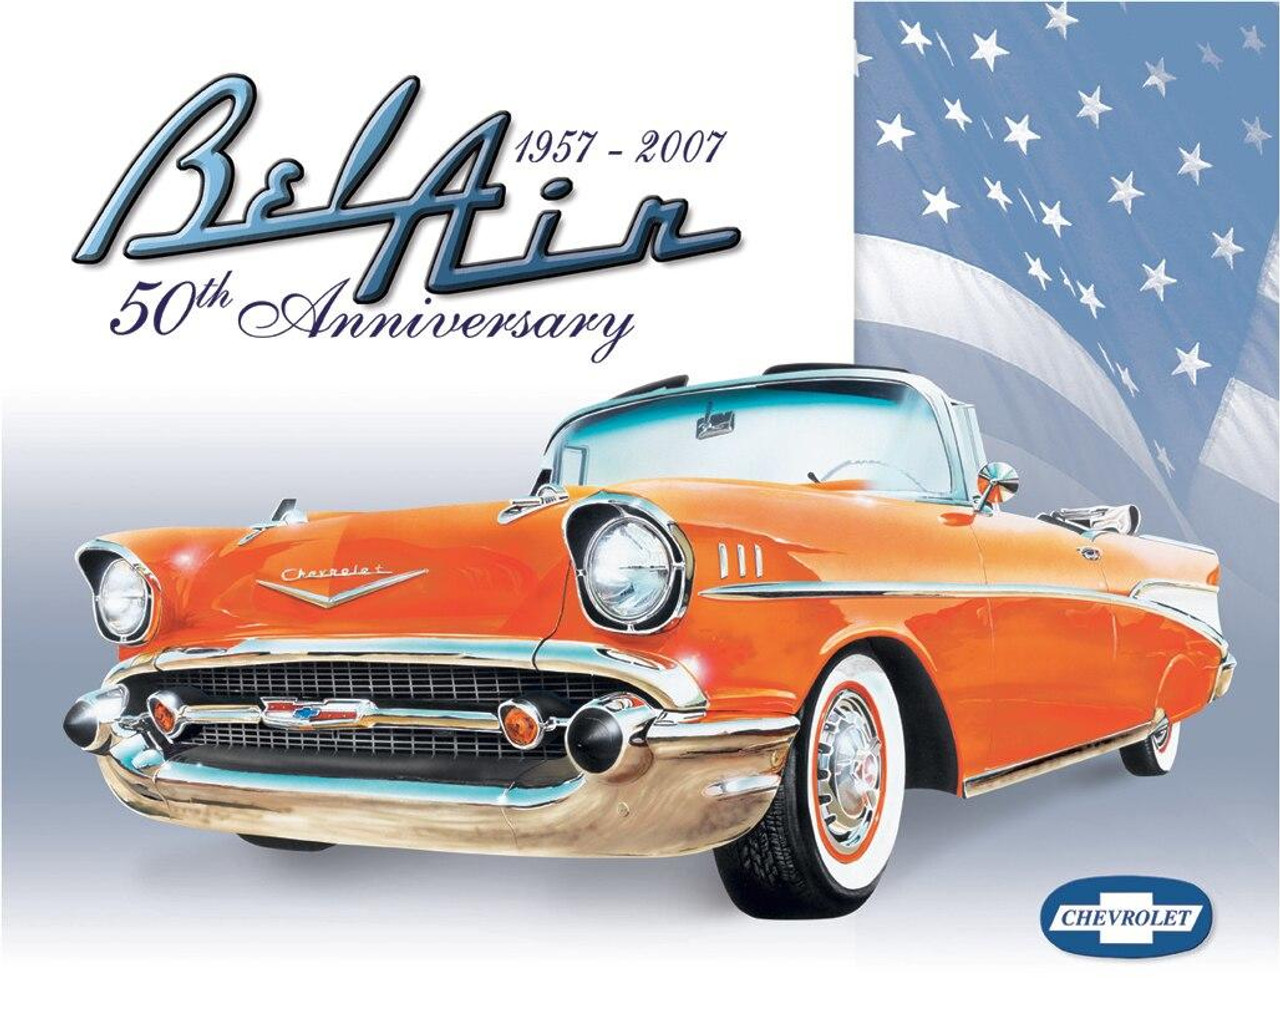 General Motors Bel Air - 50th Anniversary